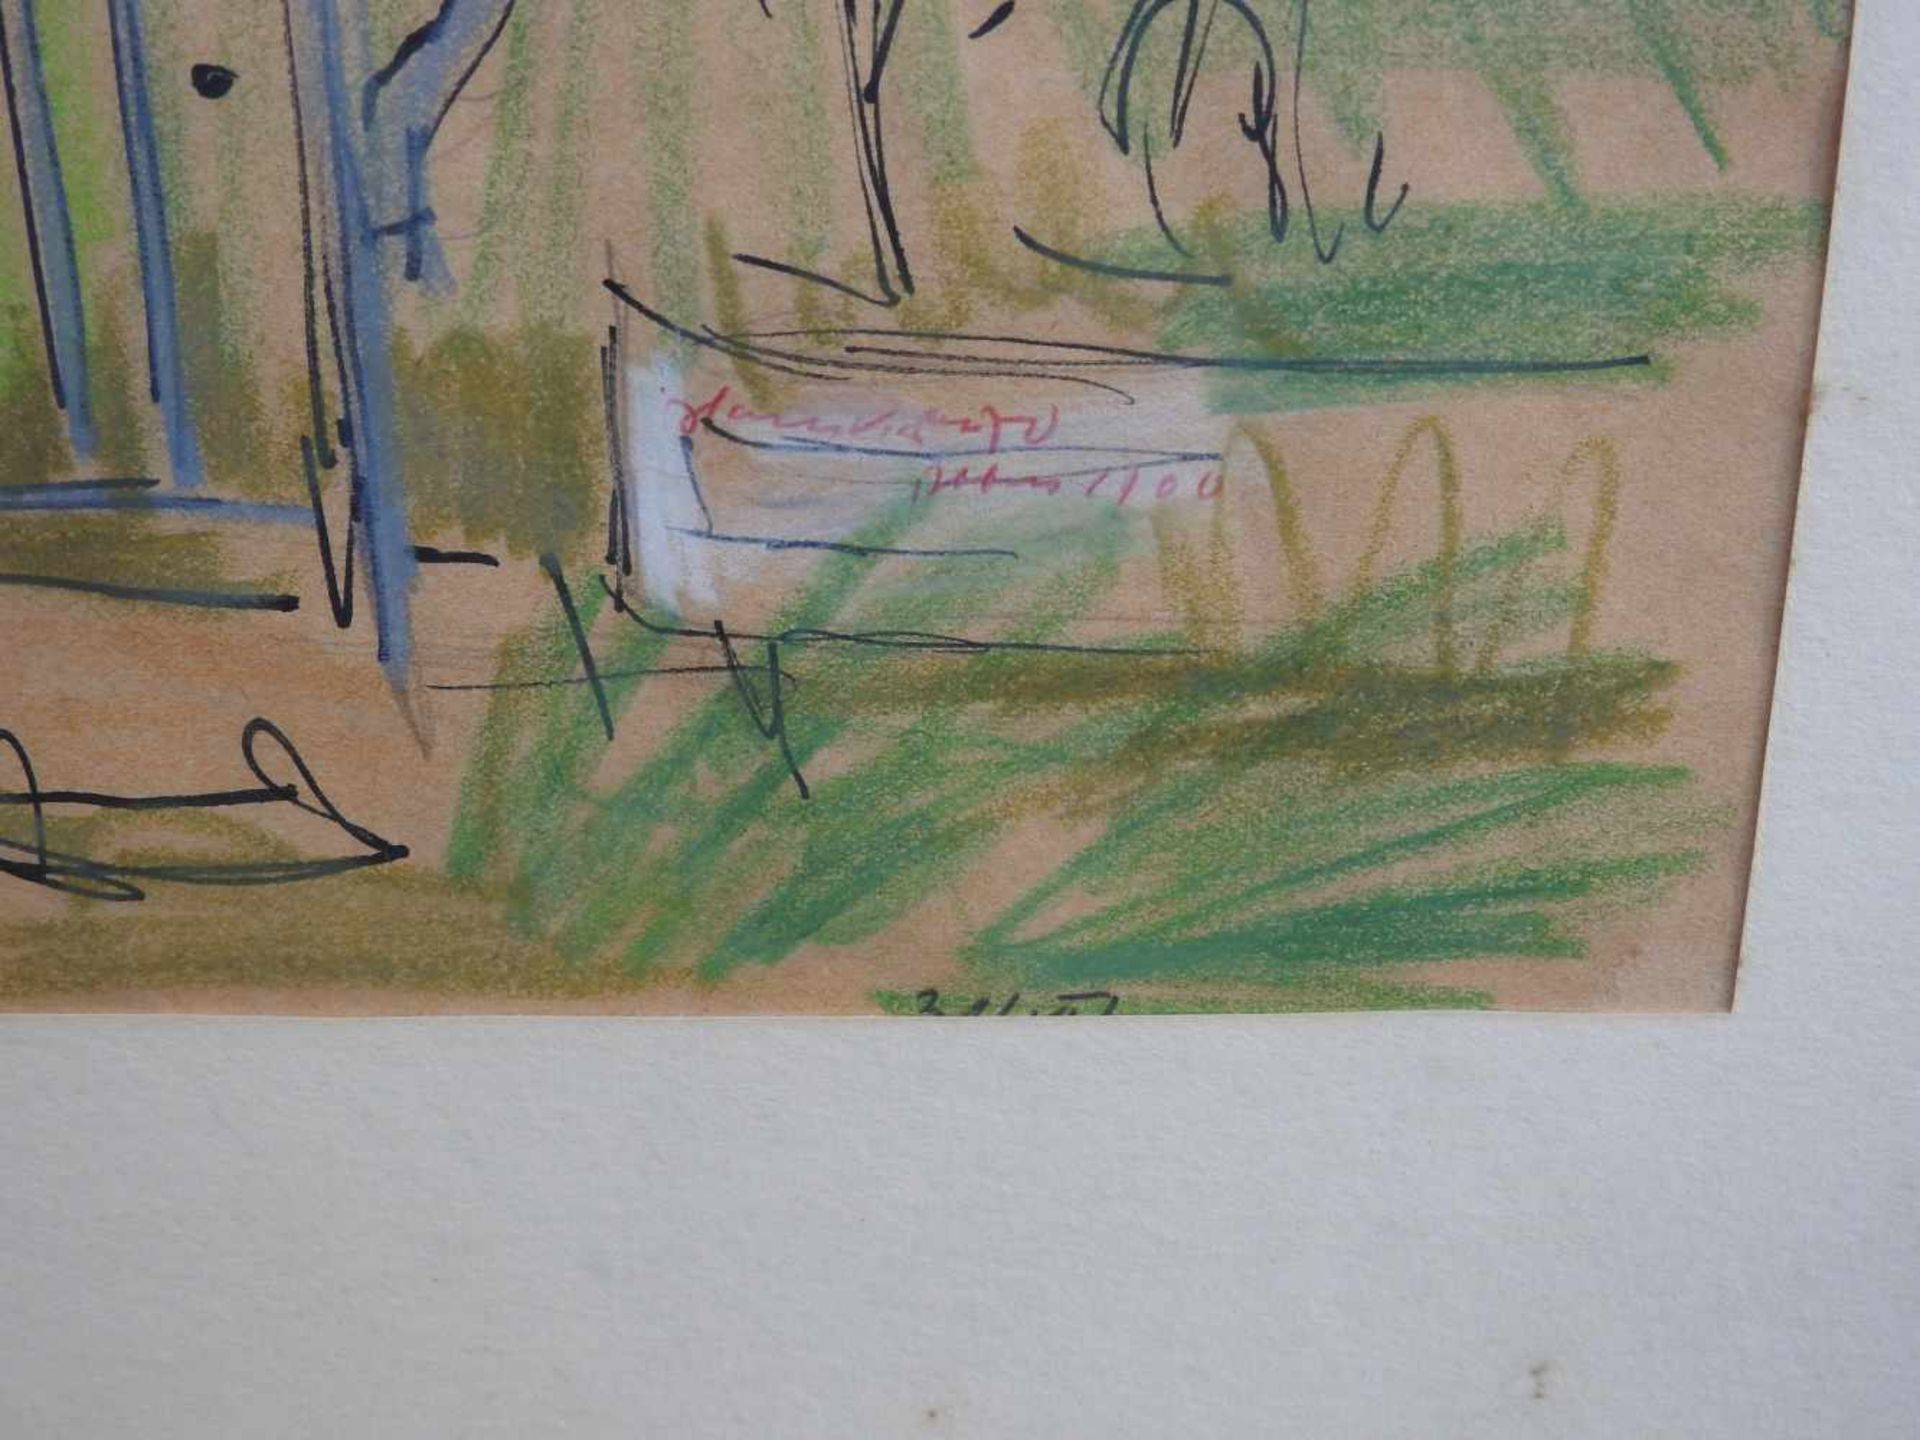 Blick auf eine LandstraßeBleistiftzeichnung auf Papier, die Grundzeichnung mit Tinte. - Bild 3 aus 3